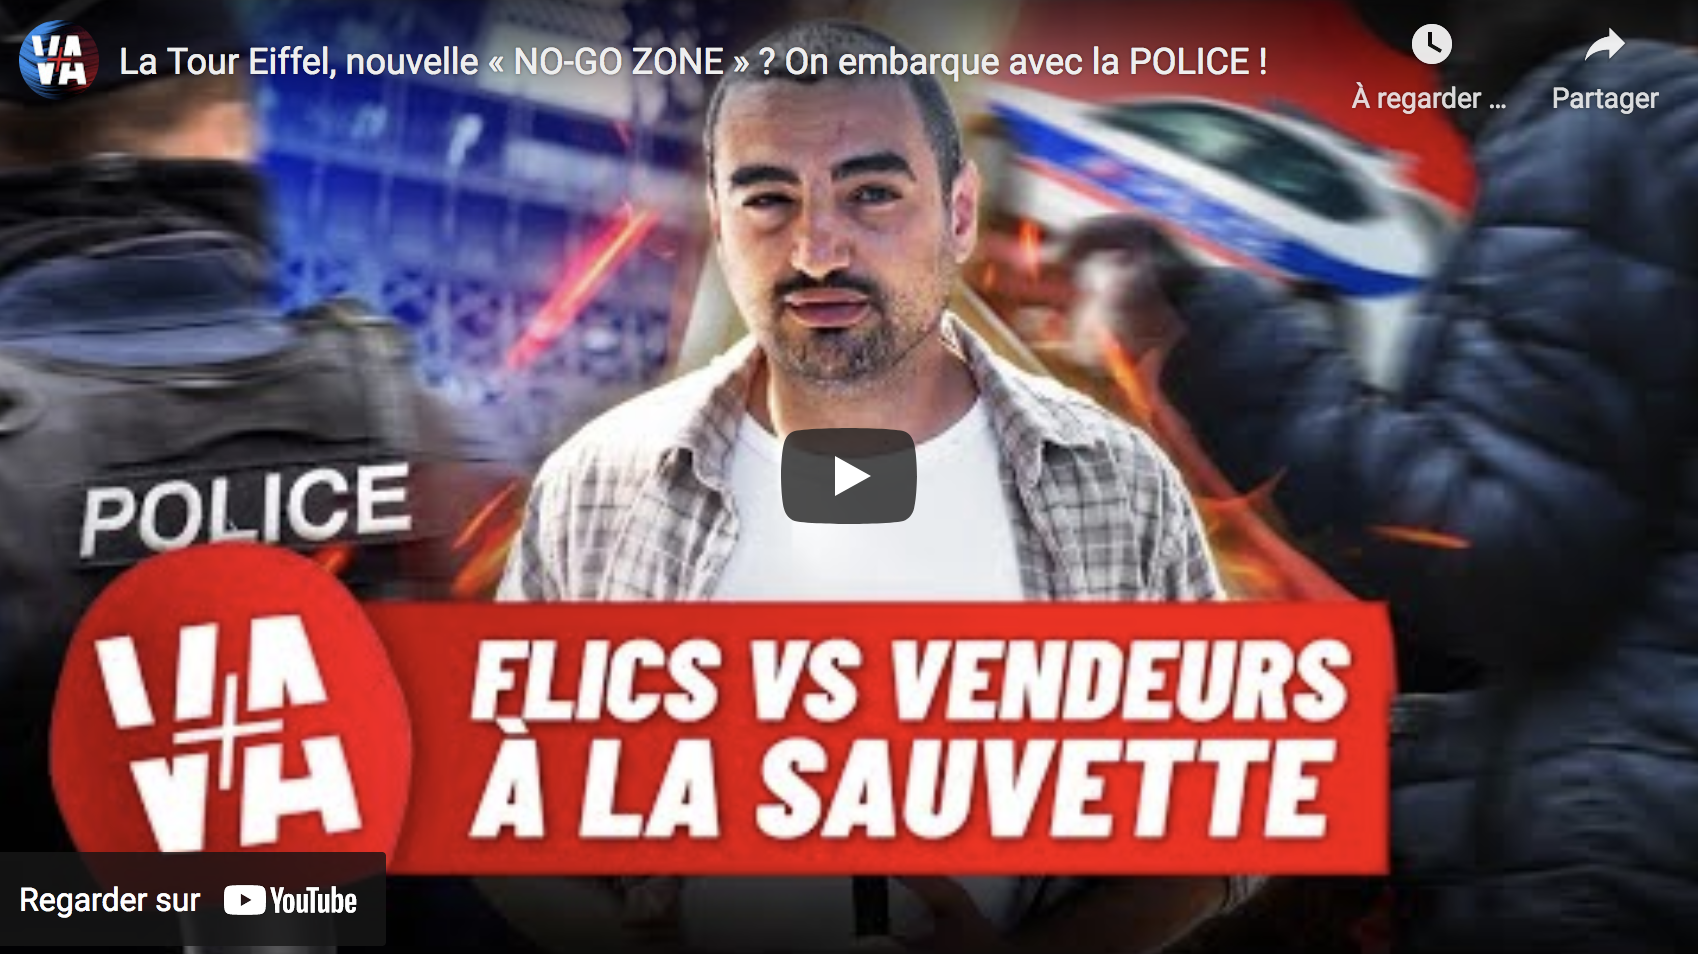 La Tour Eiffel, nouvelle « No-Go Zone » ? On embarque avec la police ! (REPORTAGE)